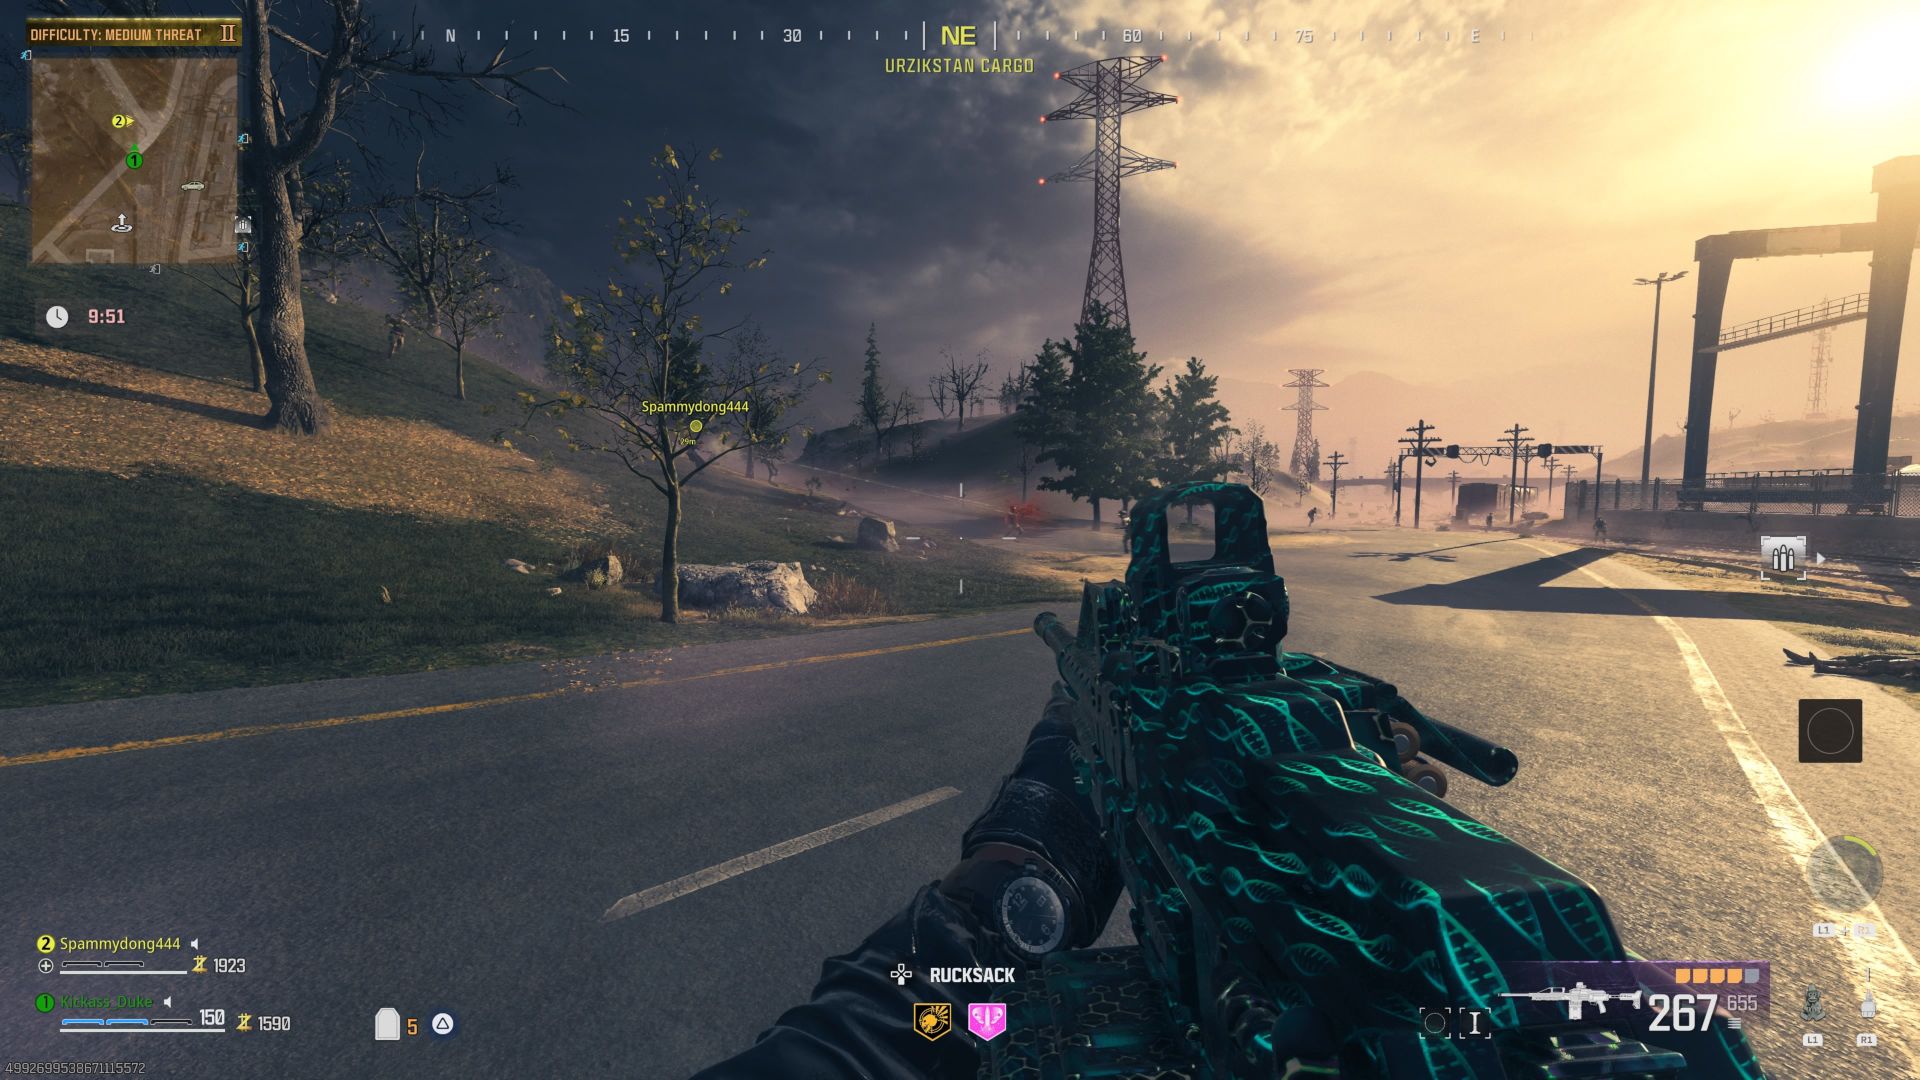 Der Screenshot aus dem MW3-Zombie-Modus zeigt ein großes Feld, das von wenigen Bäumen und Kommunikationstürmen bevölkert ist, auf dem etwa ein halbes Dutzend Zombies herumschlurfen, während der Spieler ein großes Maschinengewehr in der Hand hält.